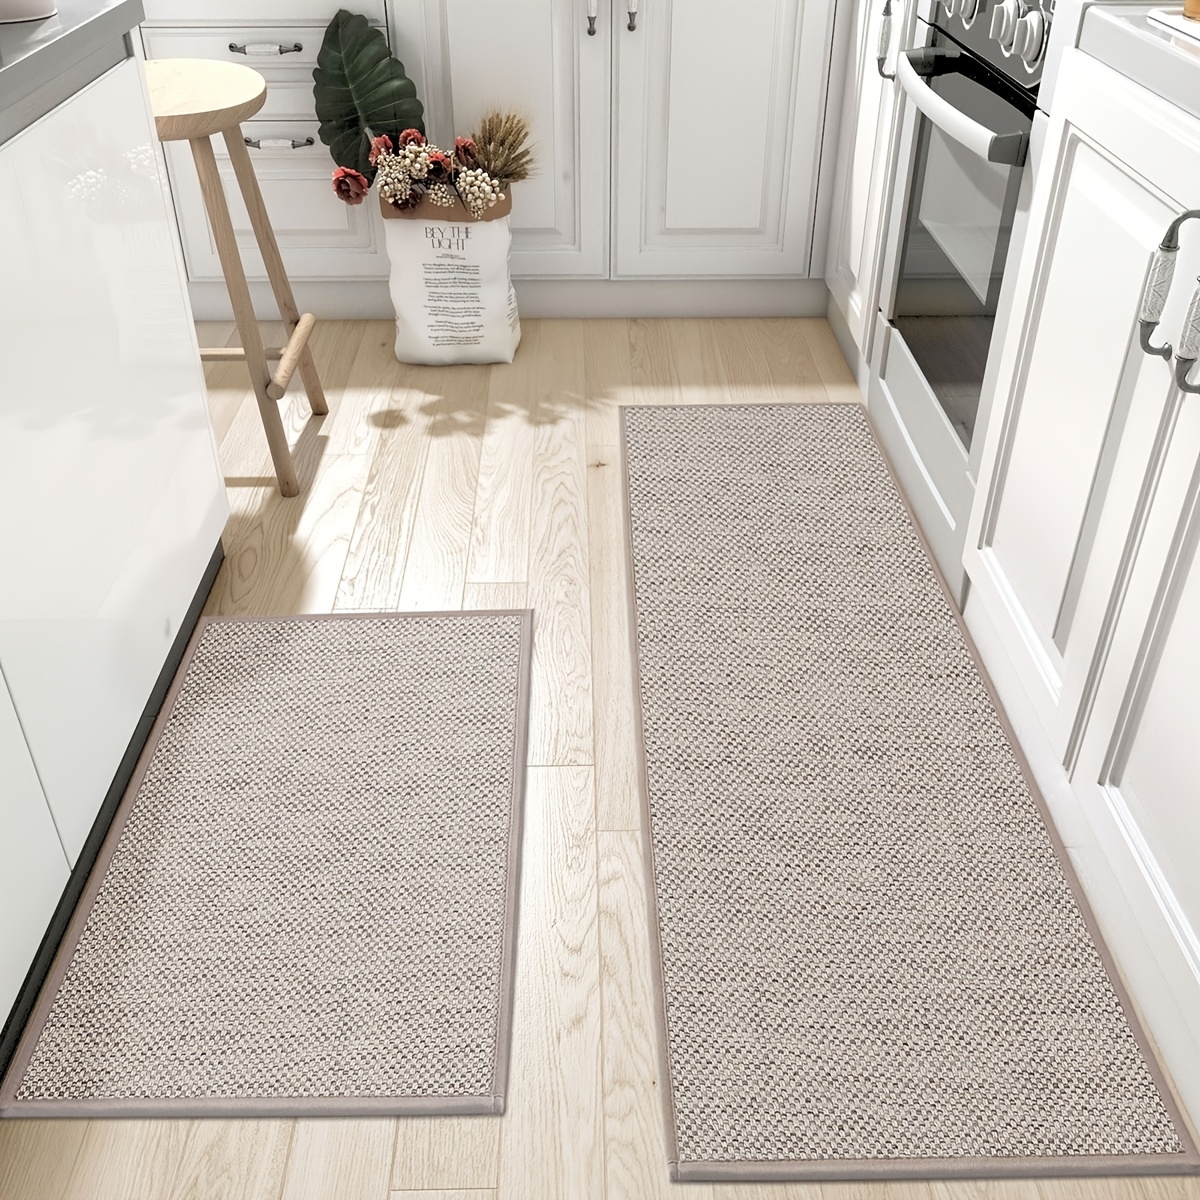  CMX-BOX Alfombras largas para pasillo, ancho de 23.6 in/27.6  in/31.5 in/39.4 in - Alfombras modernas para cocina, pasillo, escaleras,  pasillo, alfombras de área estrecha - gris (tamaño : 3.3 pies x